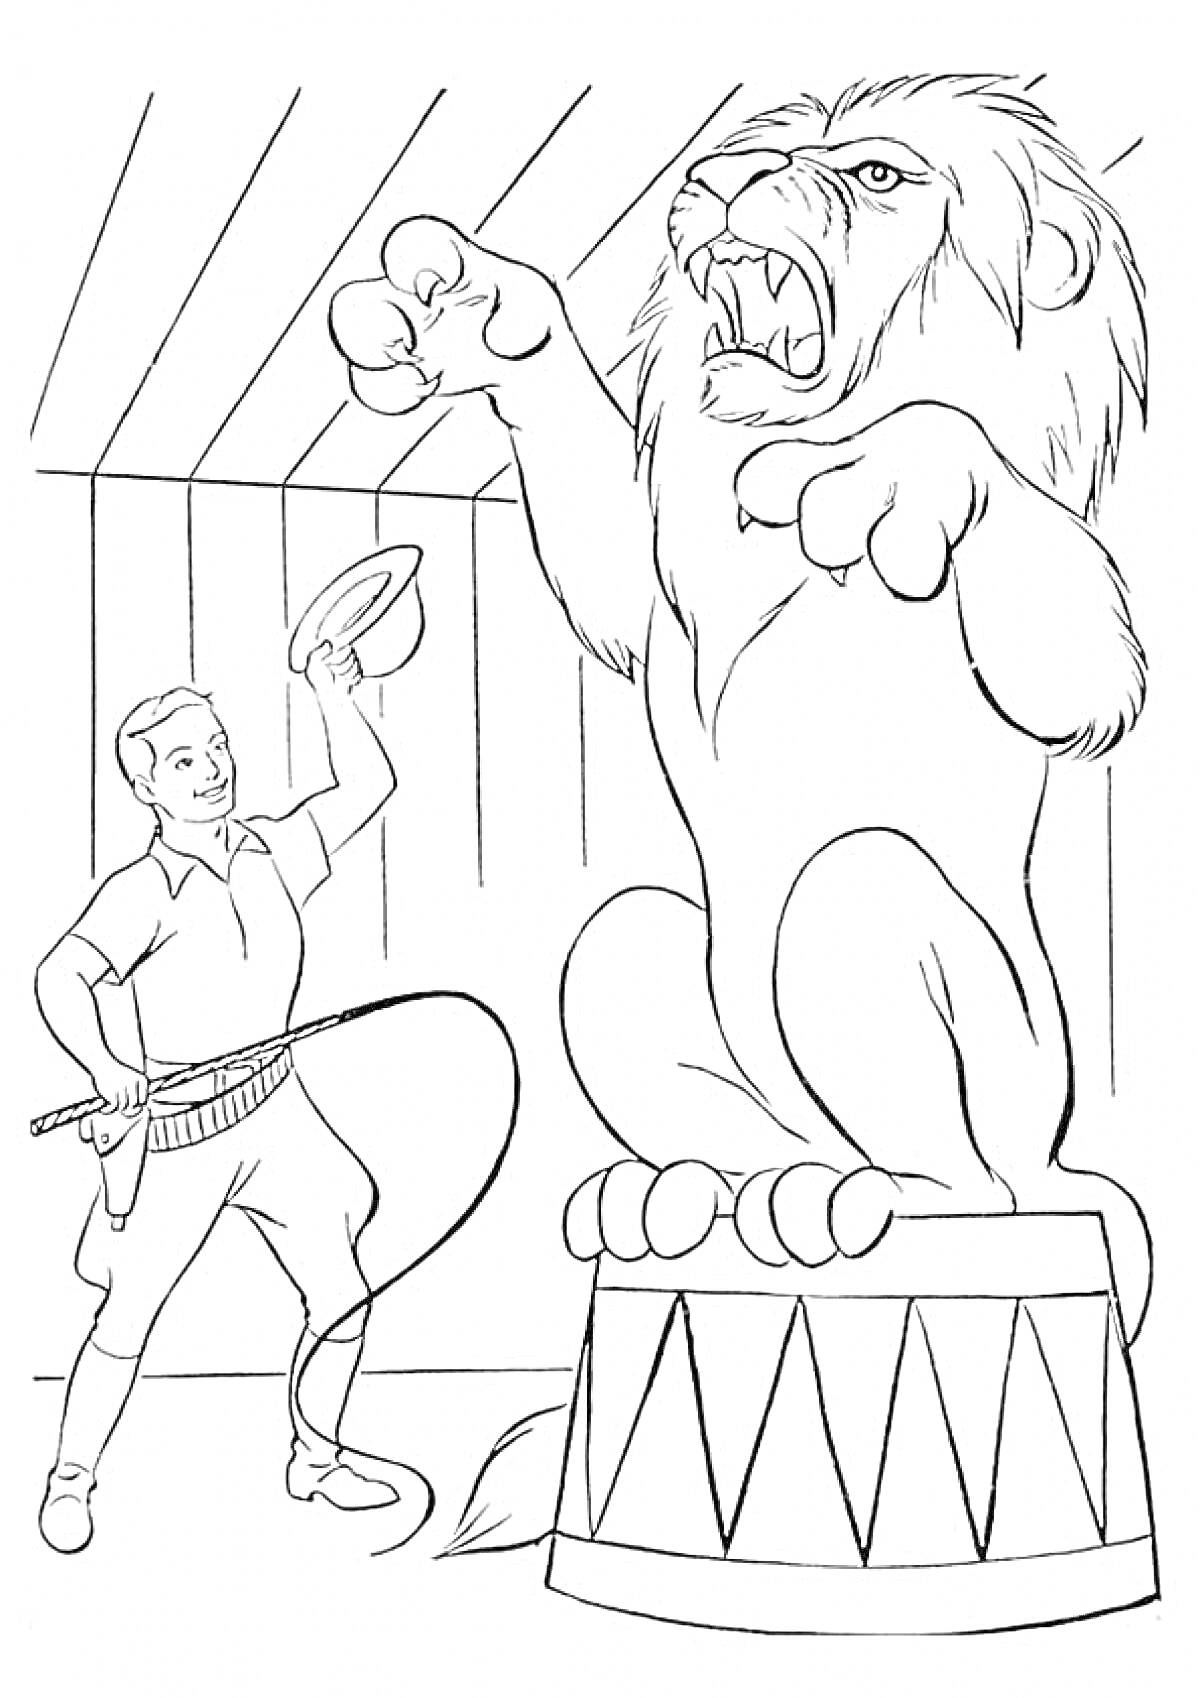 Дрессировщик с хлыстом и обручем, командующий львом, стоящим на цирковом барабане